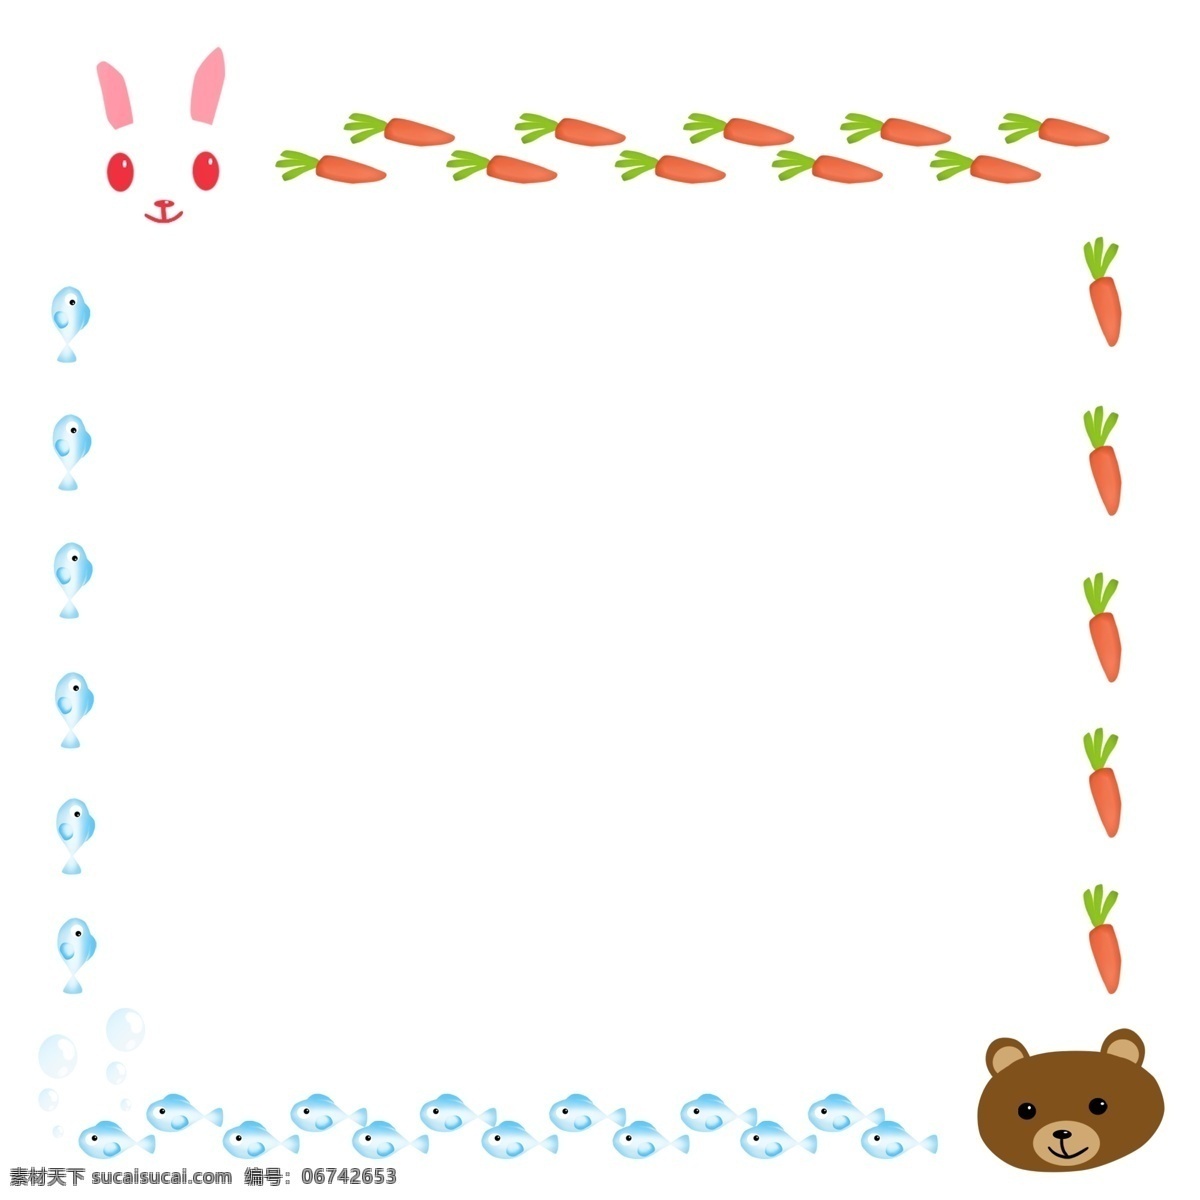 手绘 兔子 熊 边框 可爱的兔子 卡通边框 手绘插画 边框插画 棕色的小熊 兔子边框 小熊边框 萝卜边框